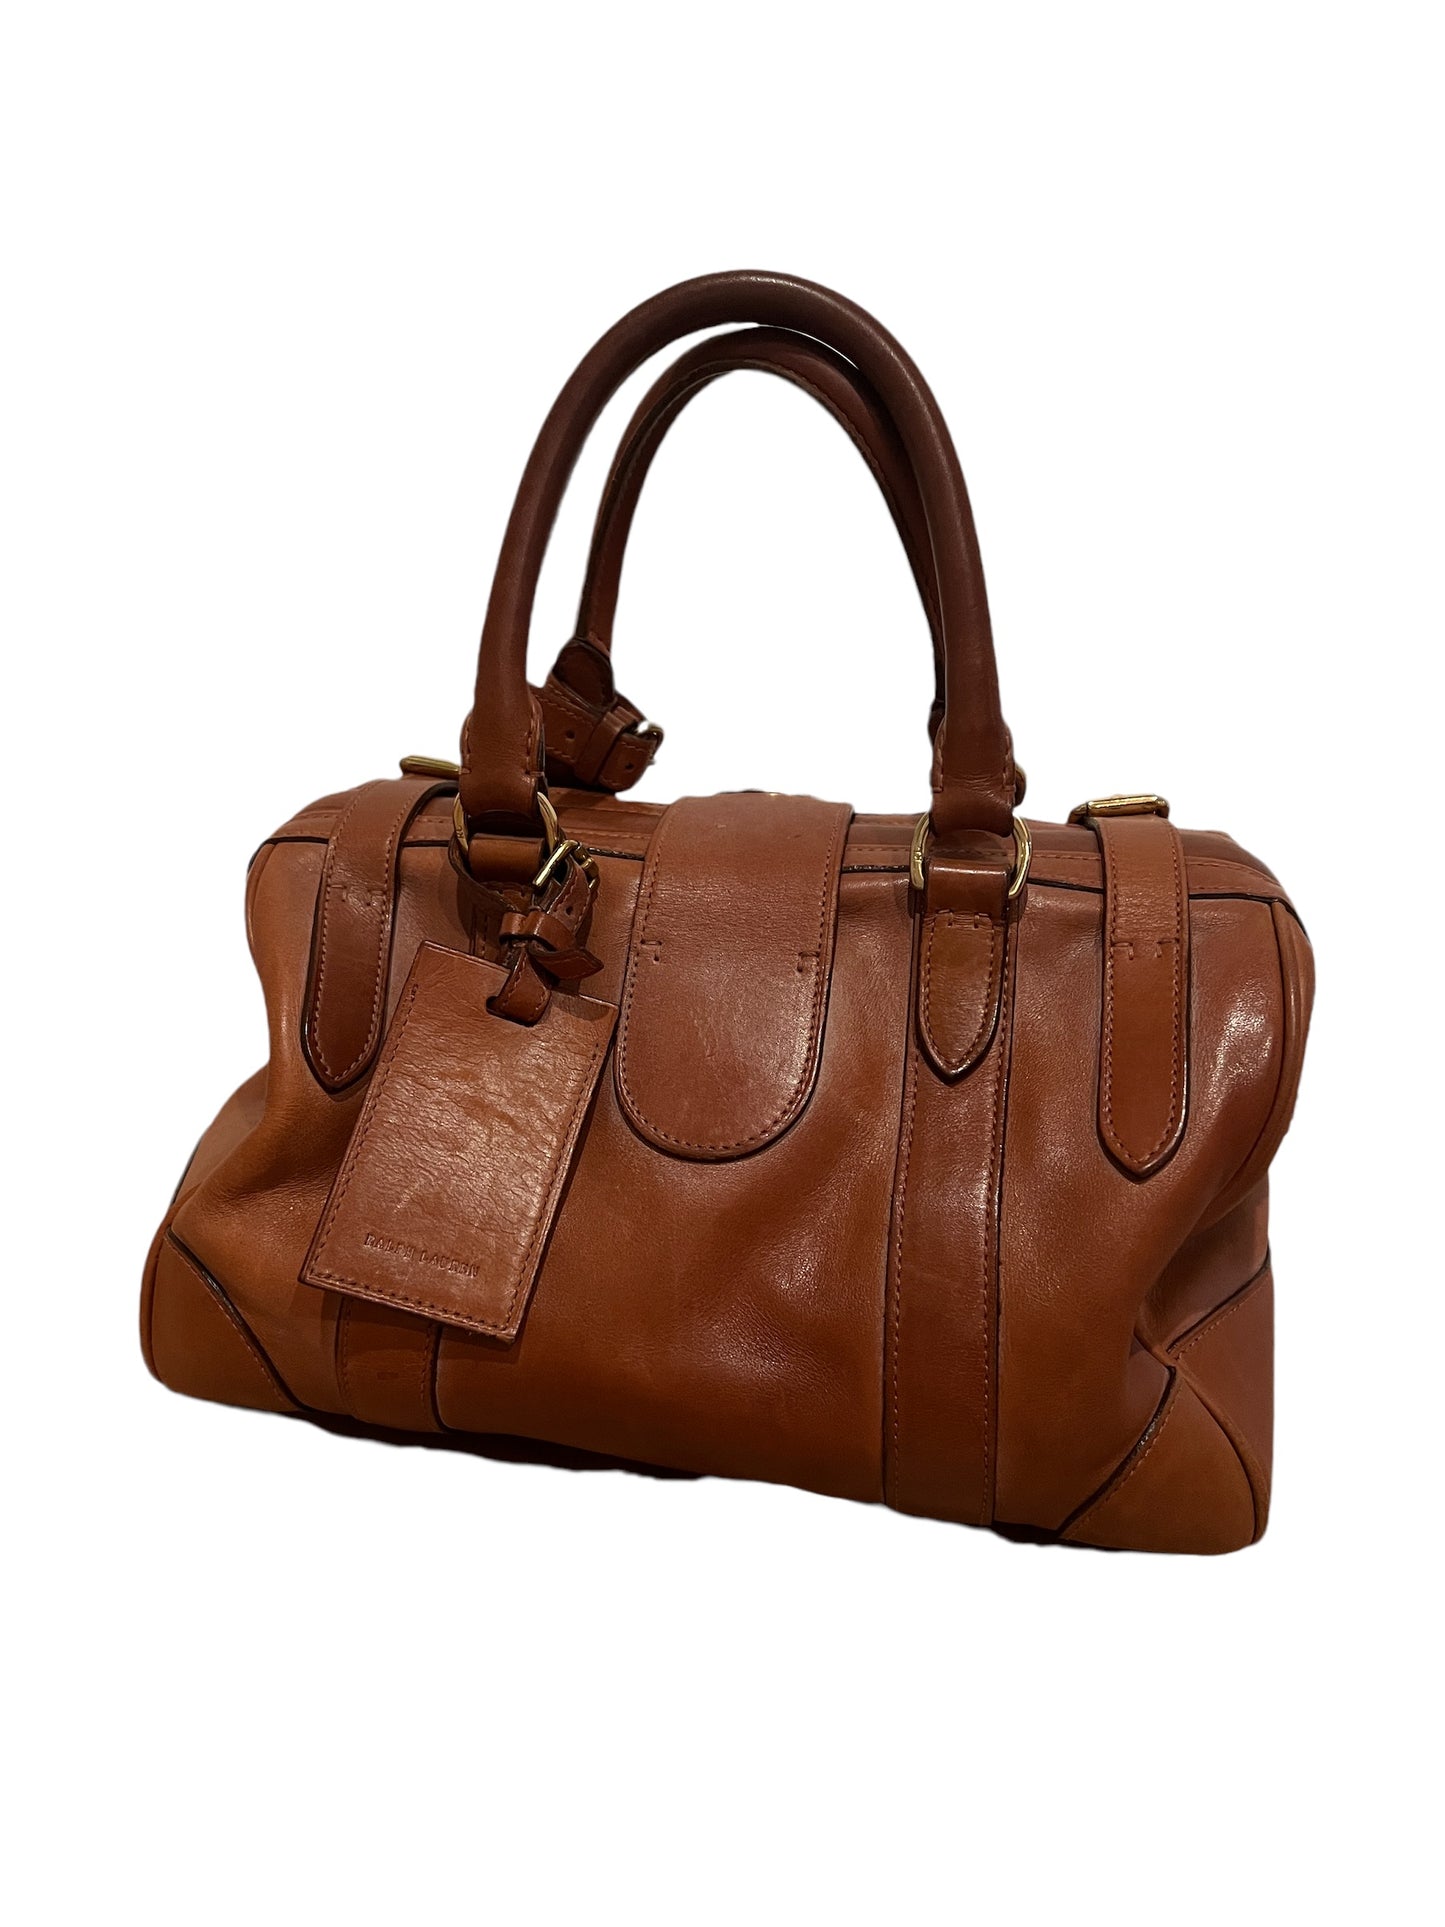 Vintage Ricky Leather Bag